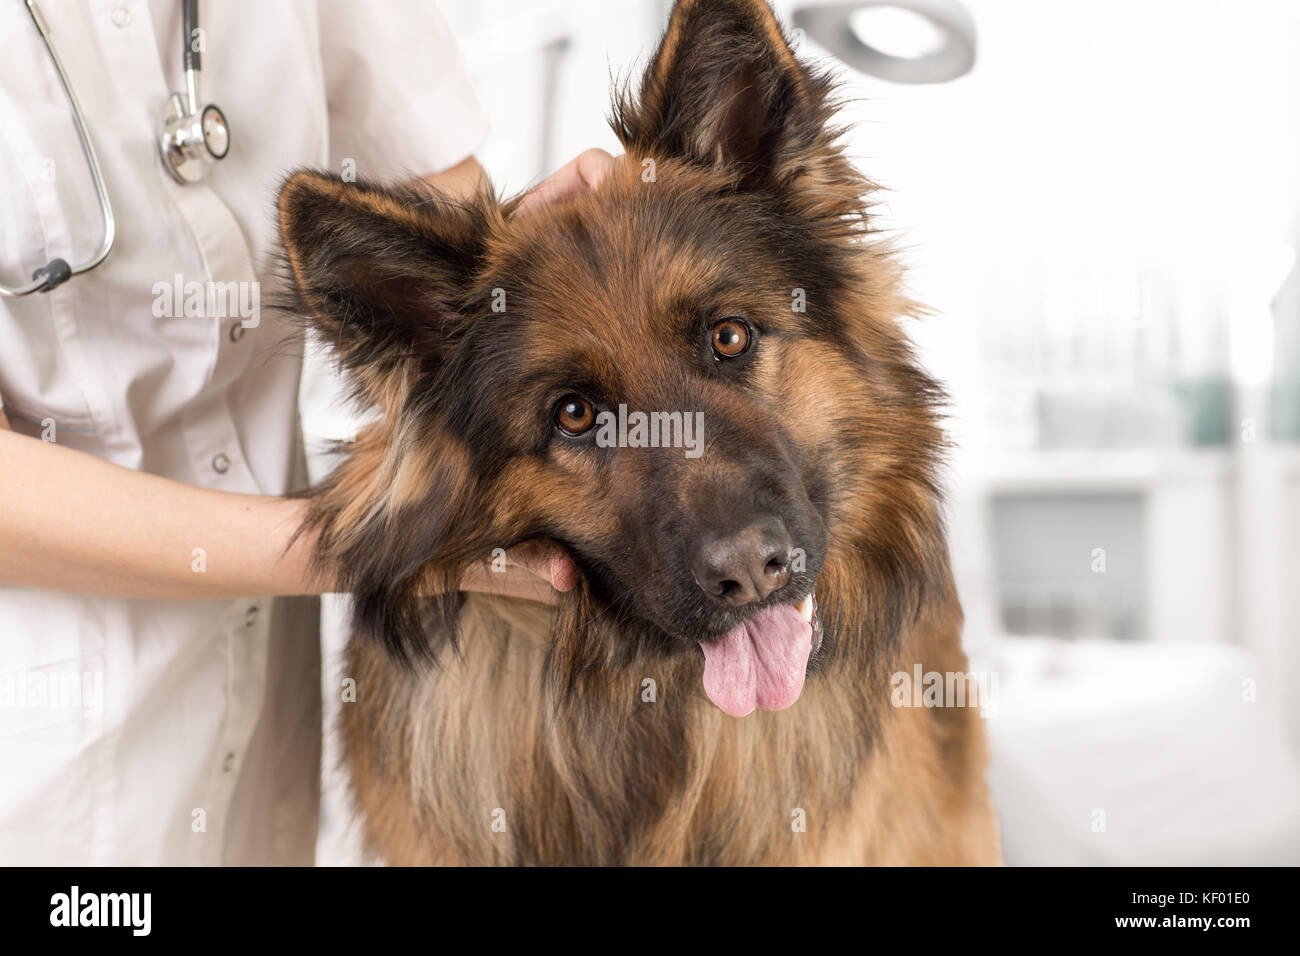 dog examination by veterinary doctor Stock Photo